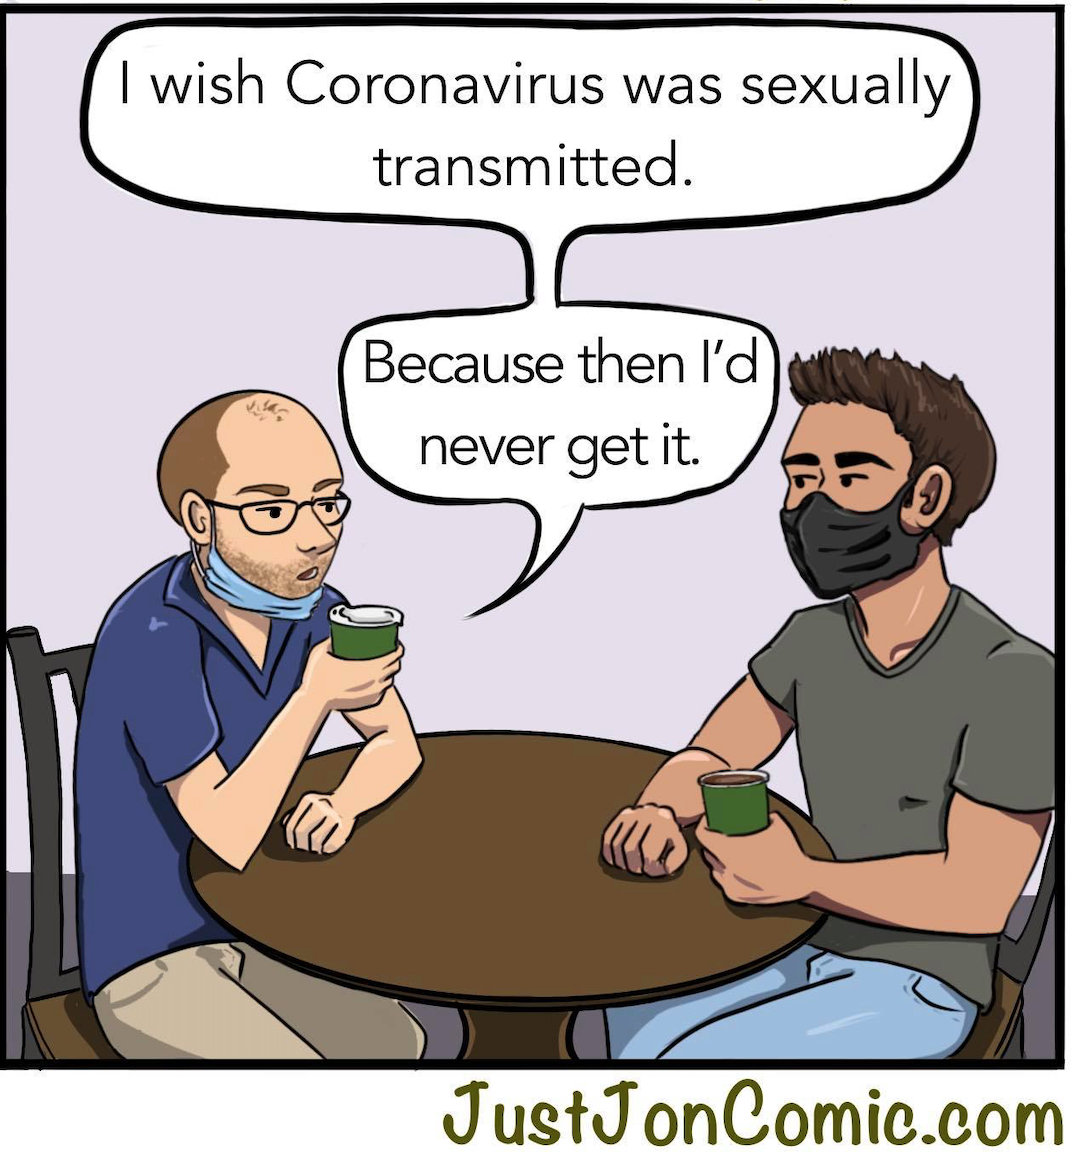 If Coronavirus was an STD...